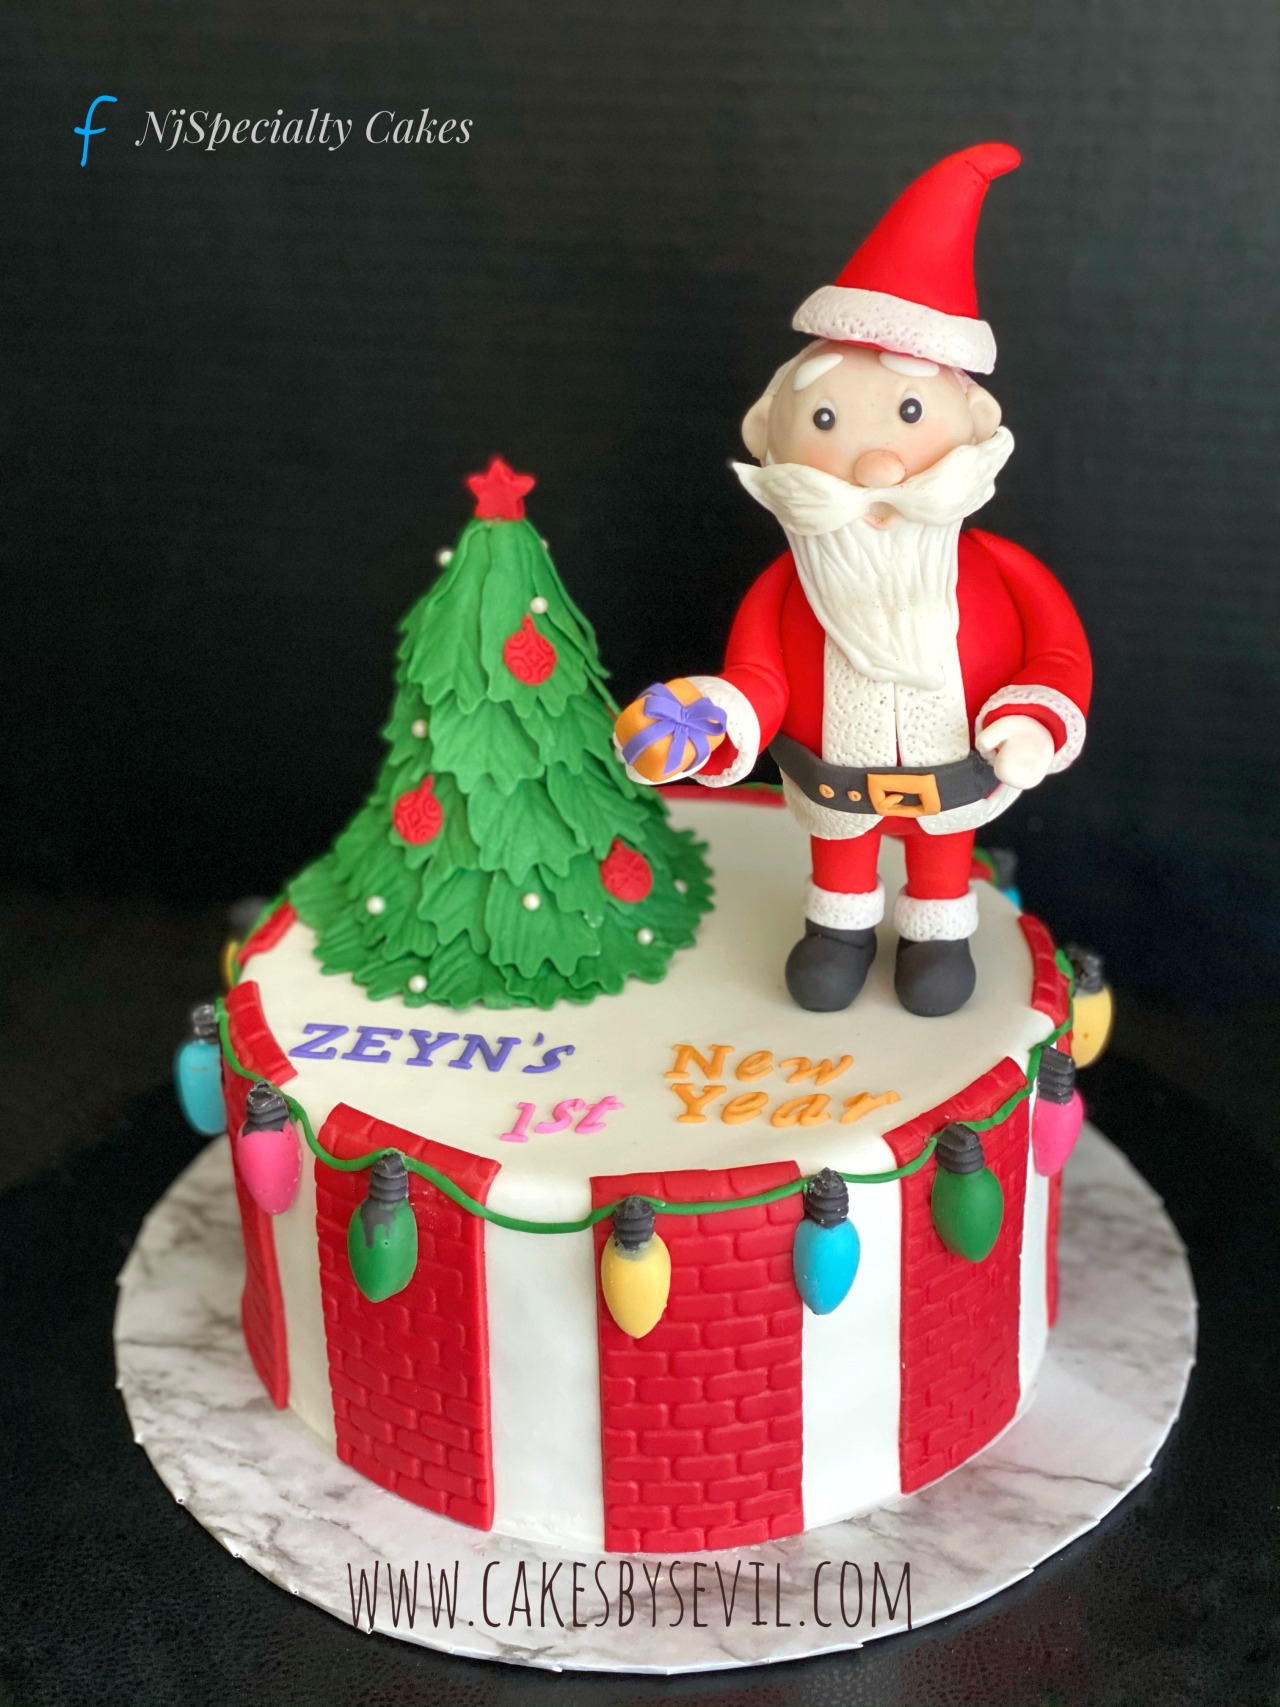 Amazing Christmas Cake Decorating Easy Tips| Santa Claus Cake Style Ideas  DIY - YouTube